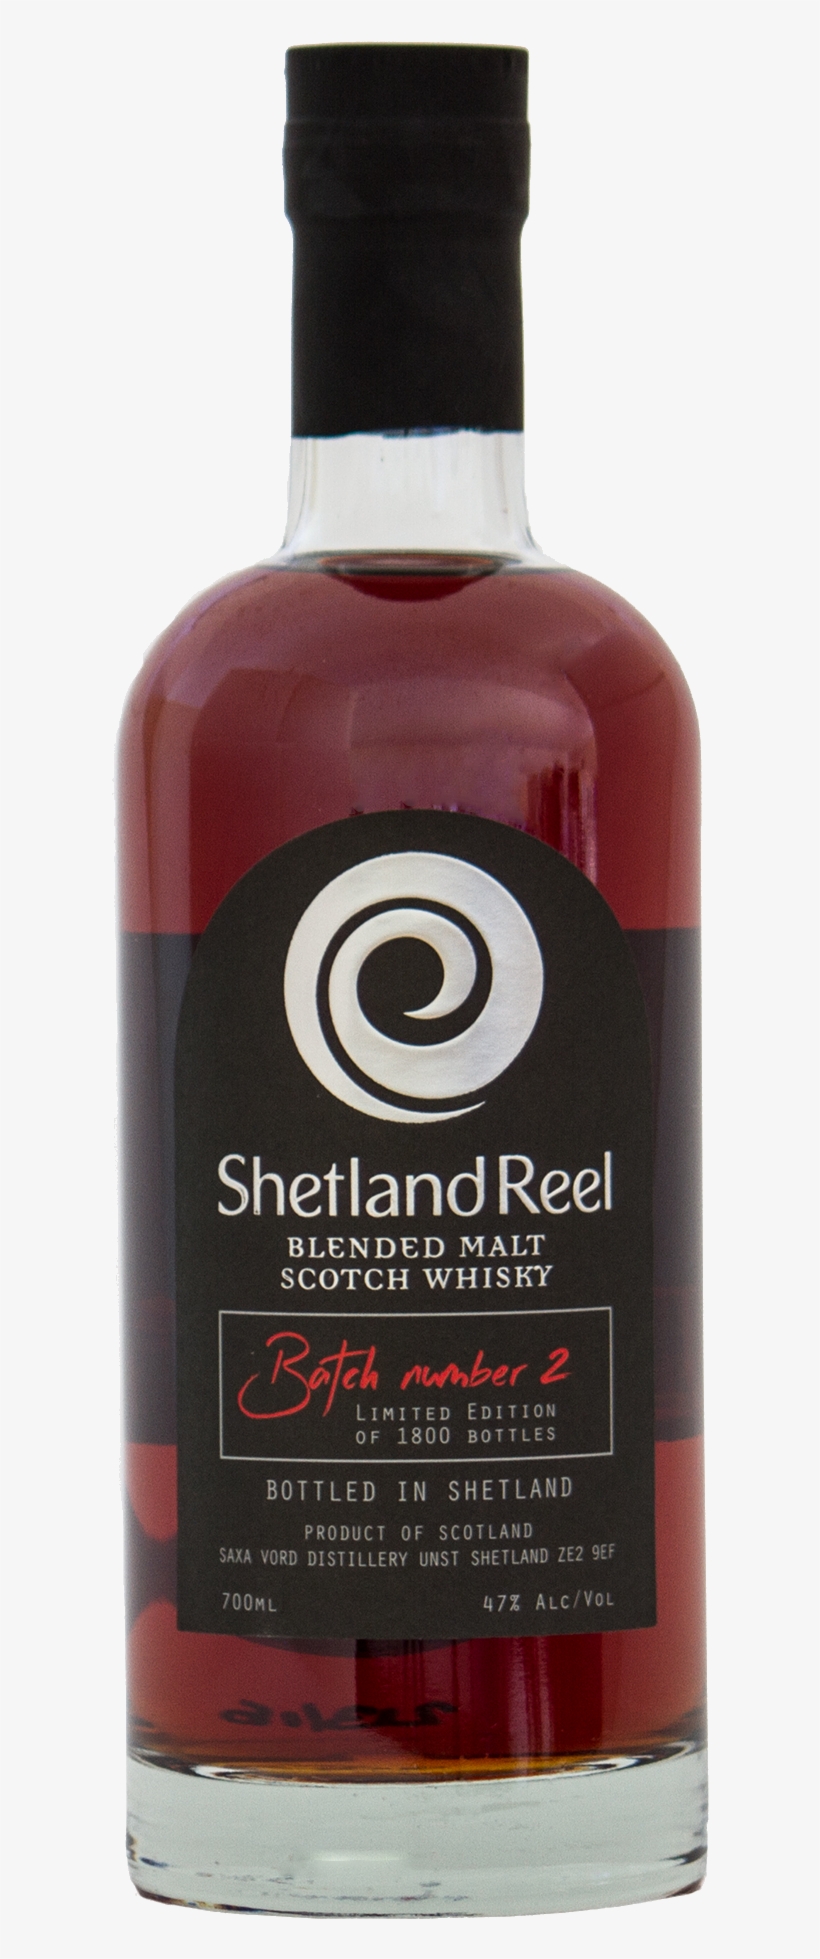 Shetland Reel Blended Malt Scotch Whisky - Shetland Reel At Saxa Vord Distillery, transparent png #2944101